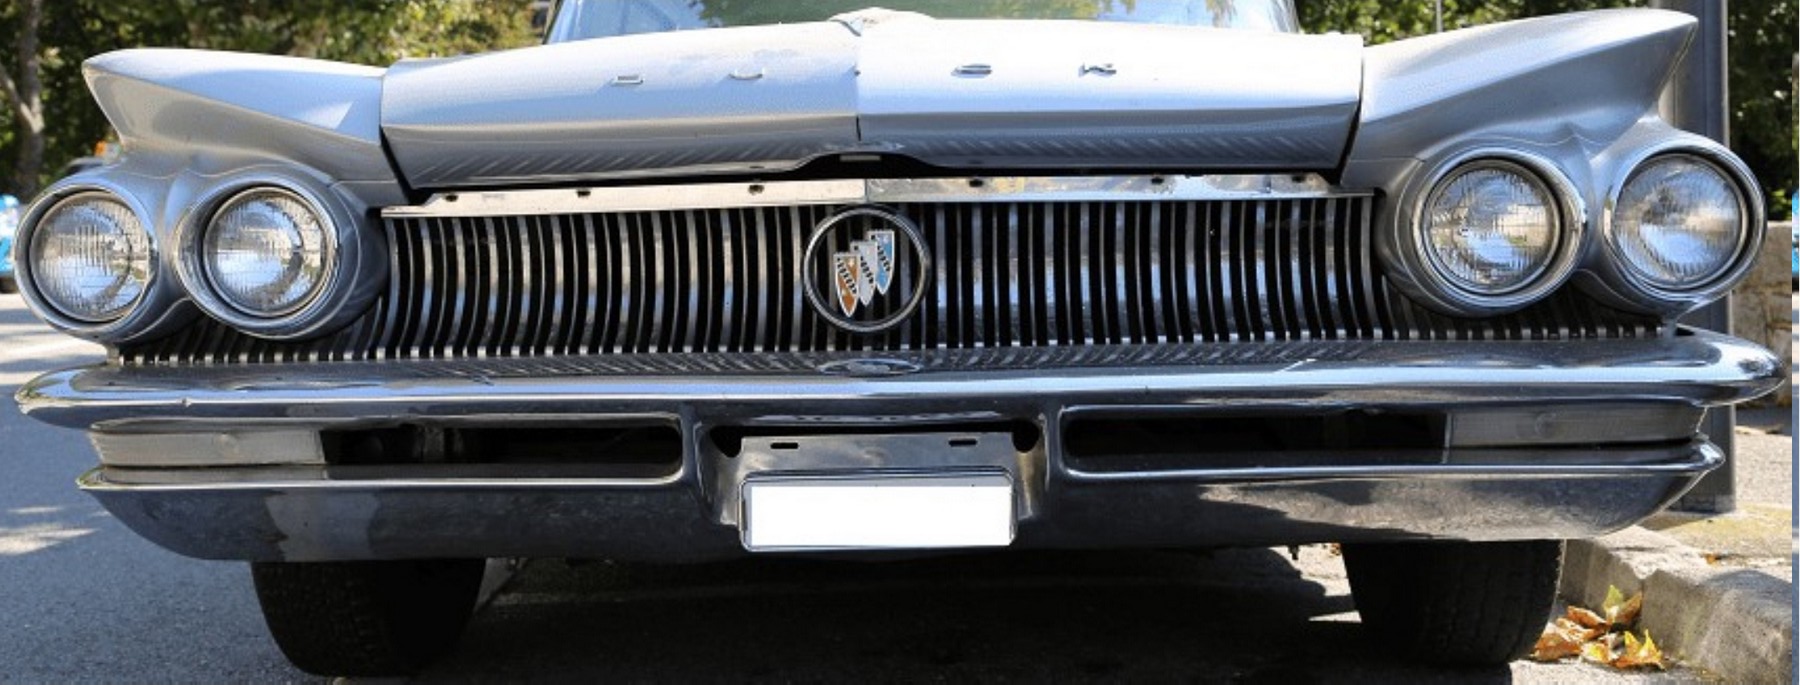 La Buick Invicta 225 Cabriolet de Johnny ( 1962 ) Sans_148